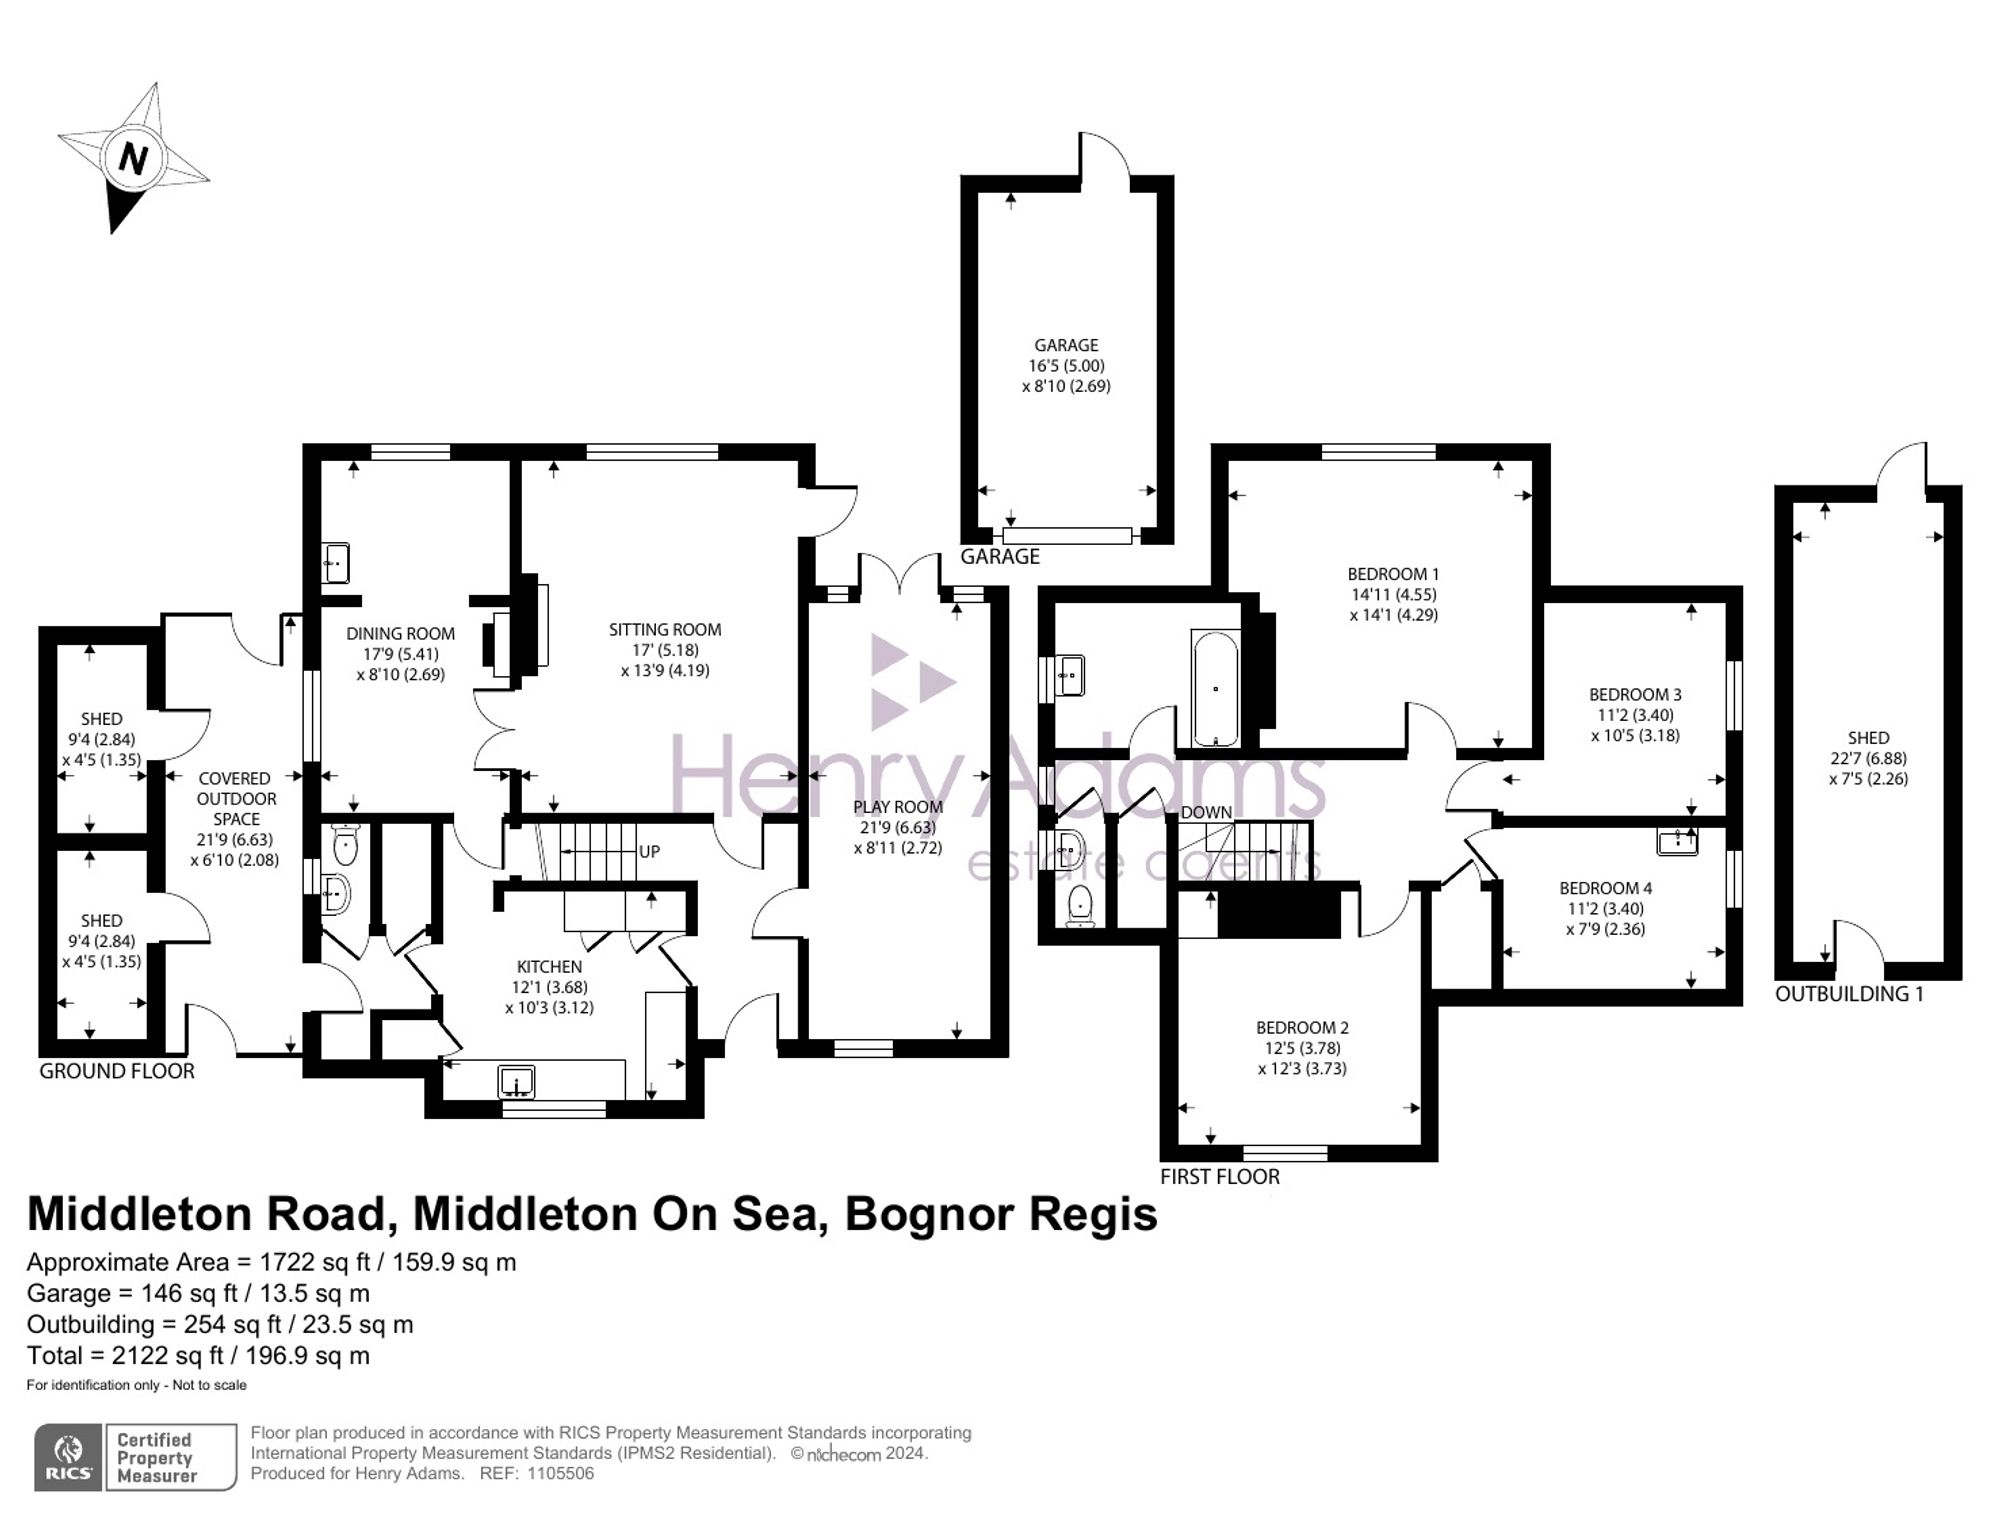 110 Middleton Road, Bognor Regis, PO22 floorplans